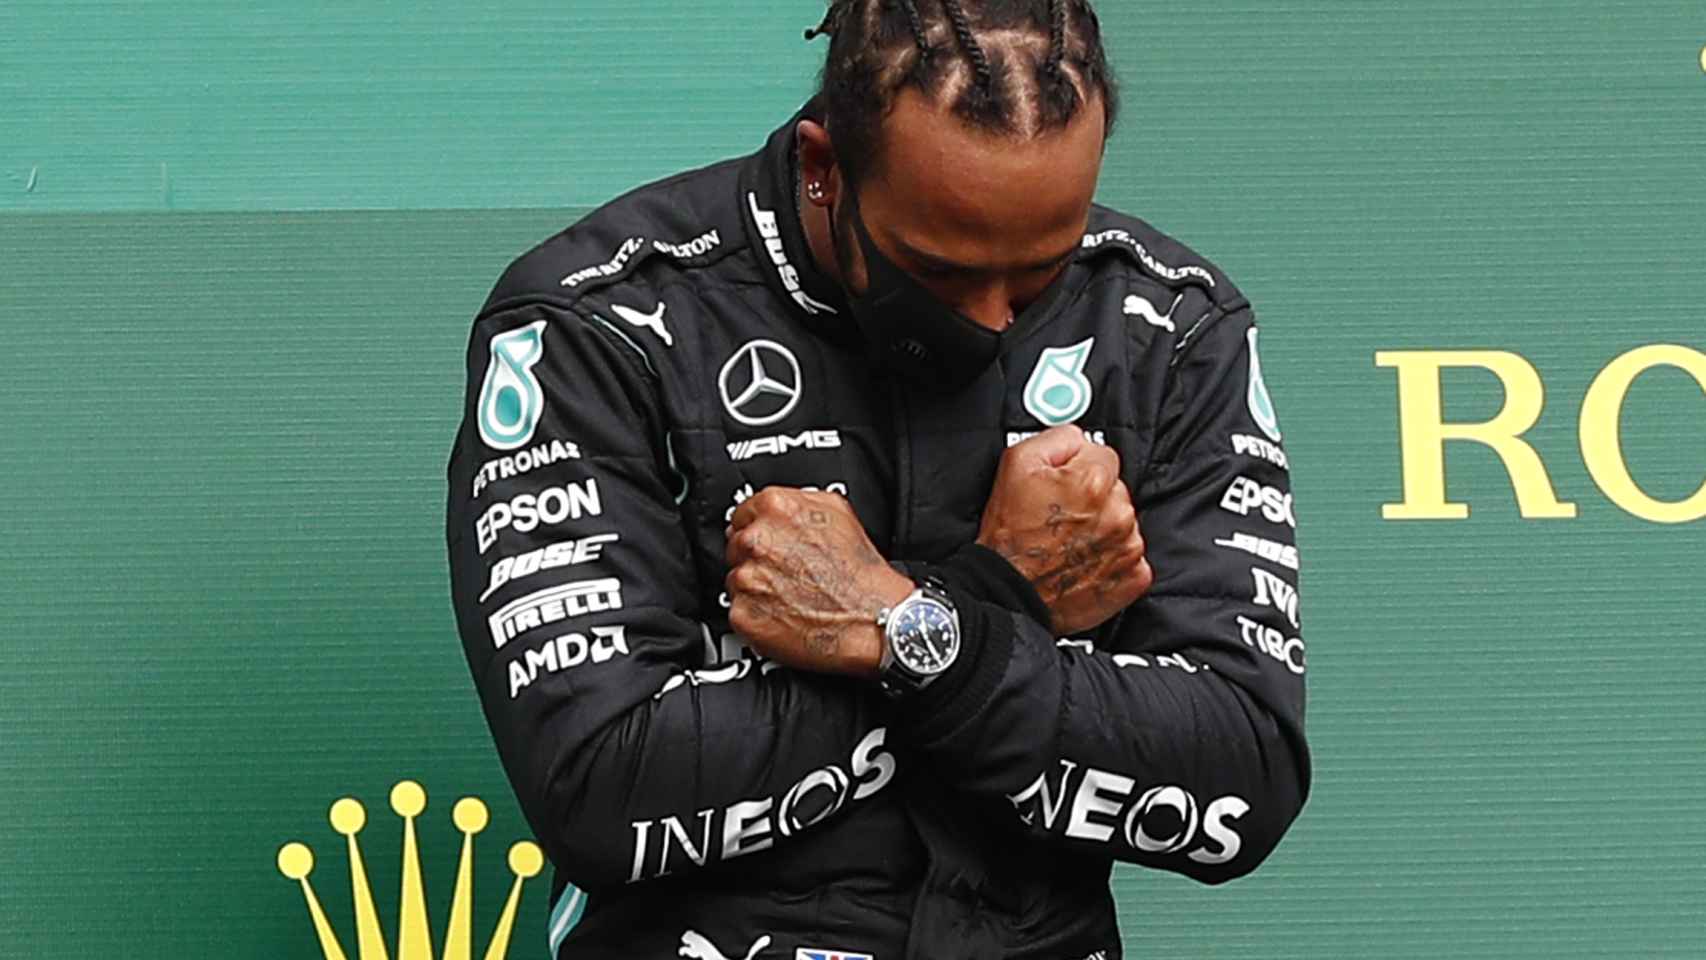 Lewis Hamilton homenajea al actor de 'Black Panther' tras su muerte después de ganar en Spa